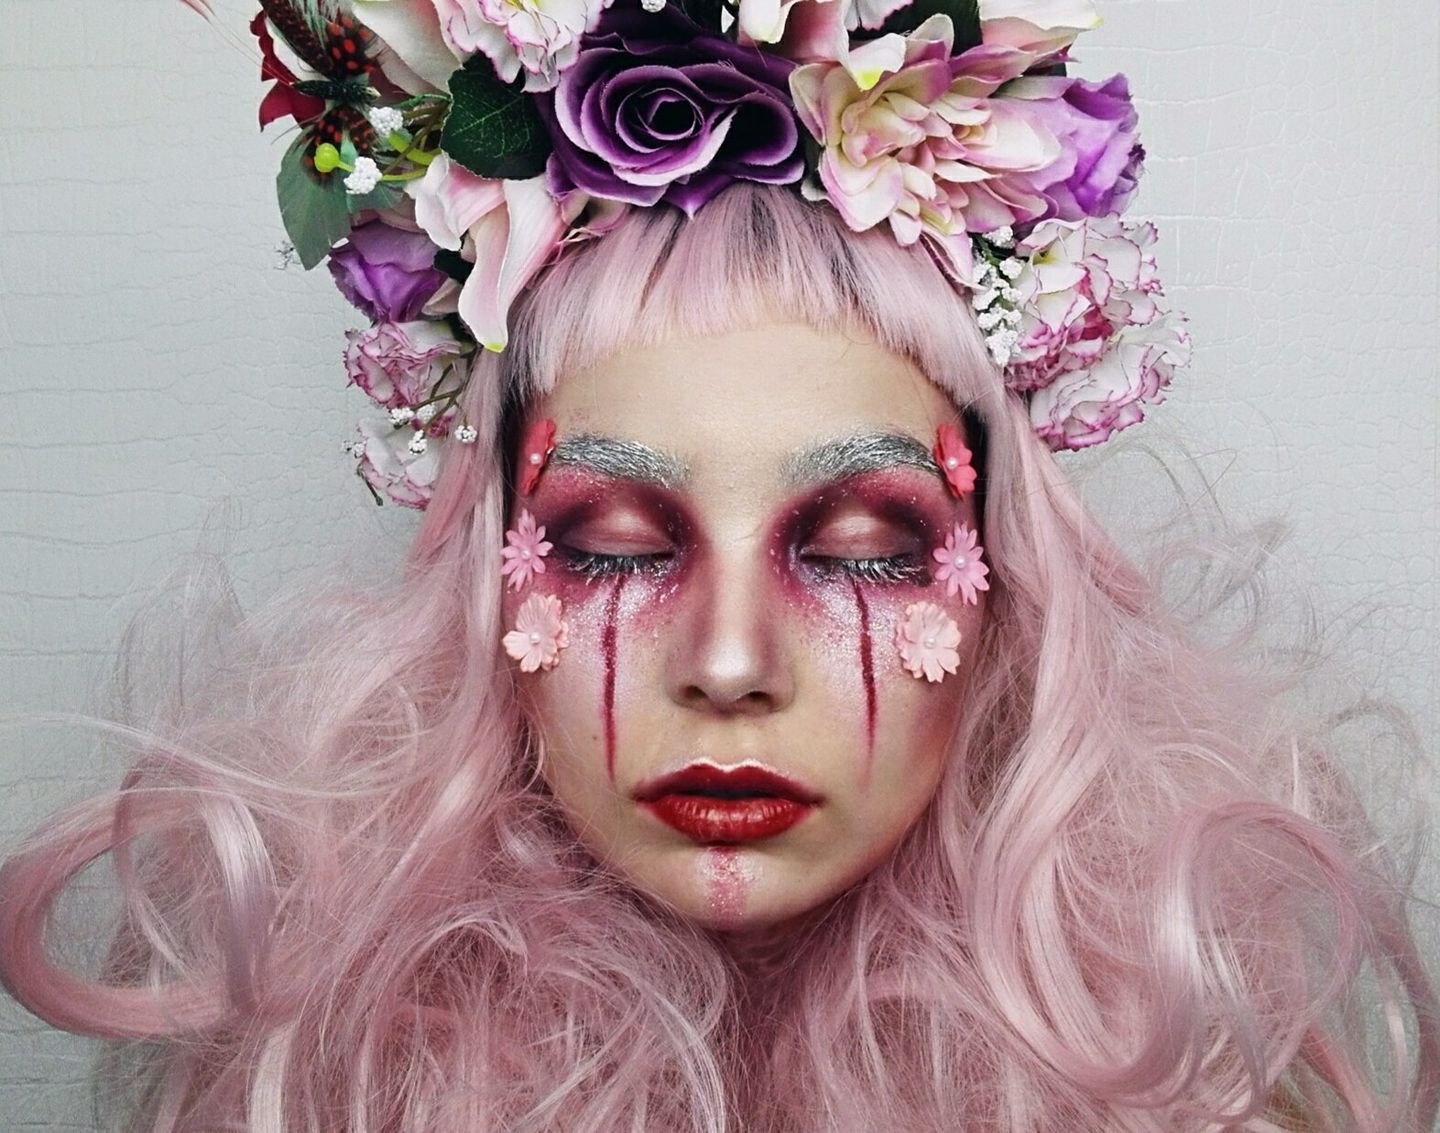 Dolly MakeupArt: envie d’un maquillage artistique?